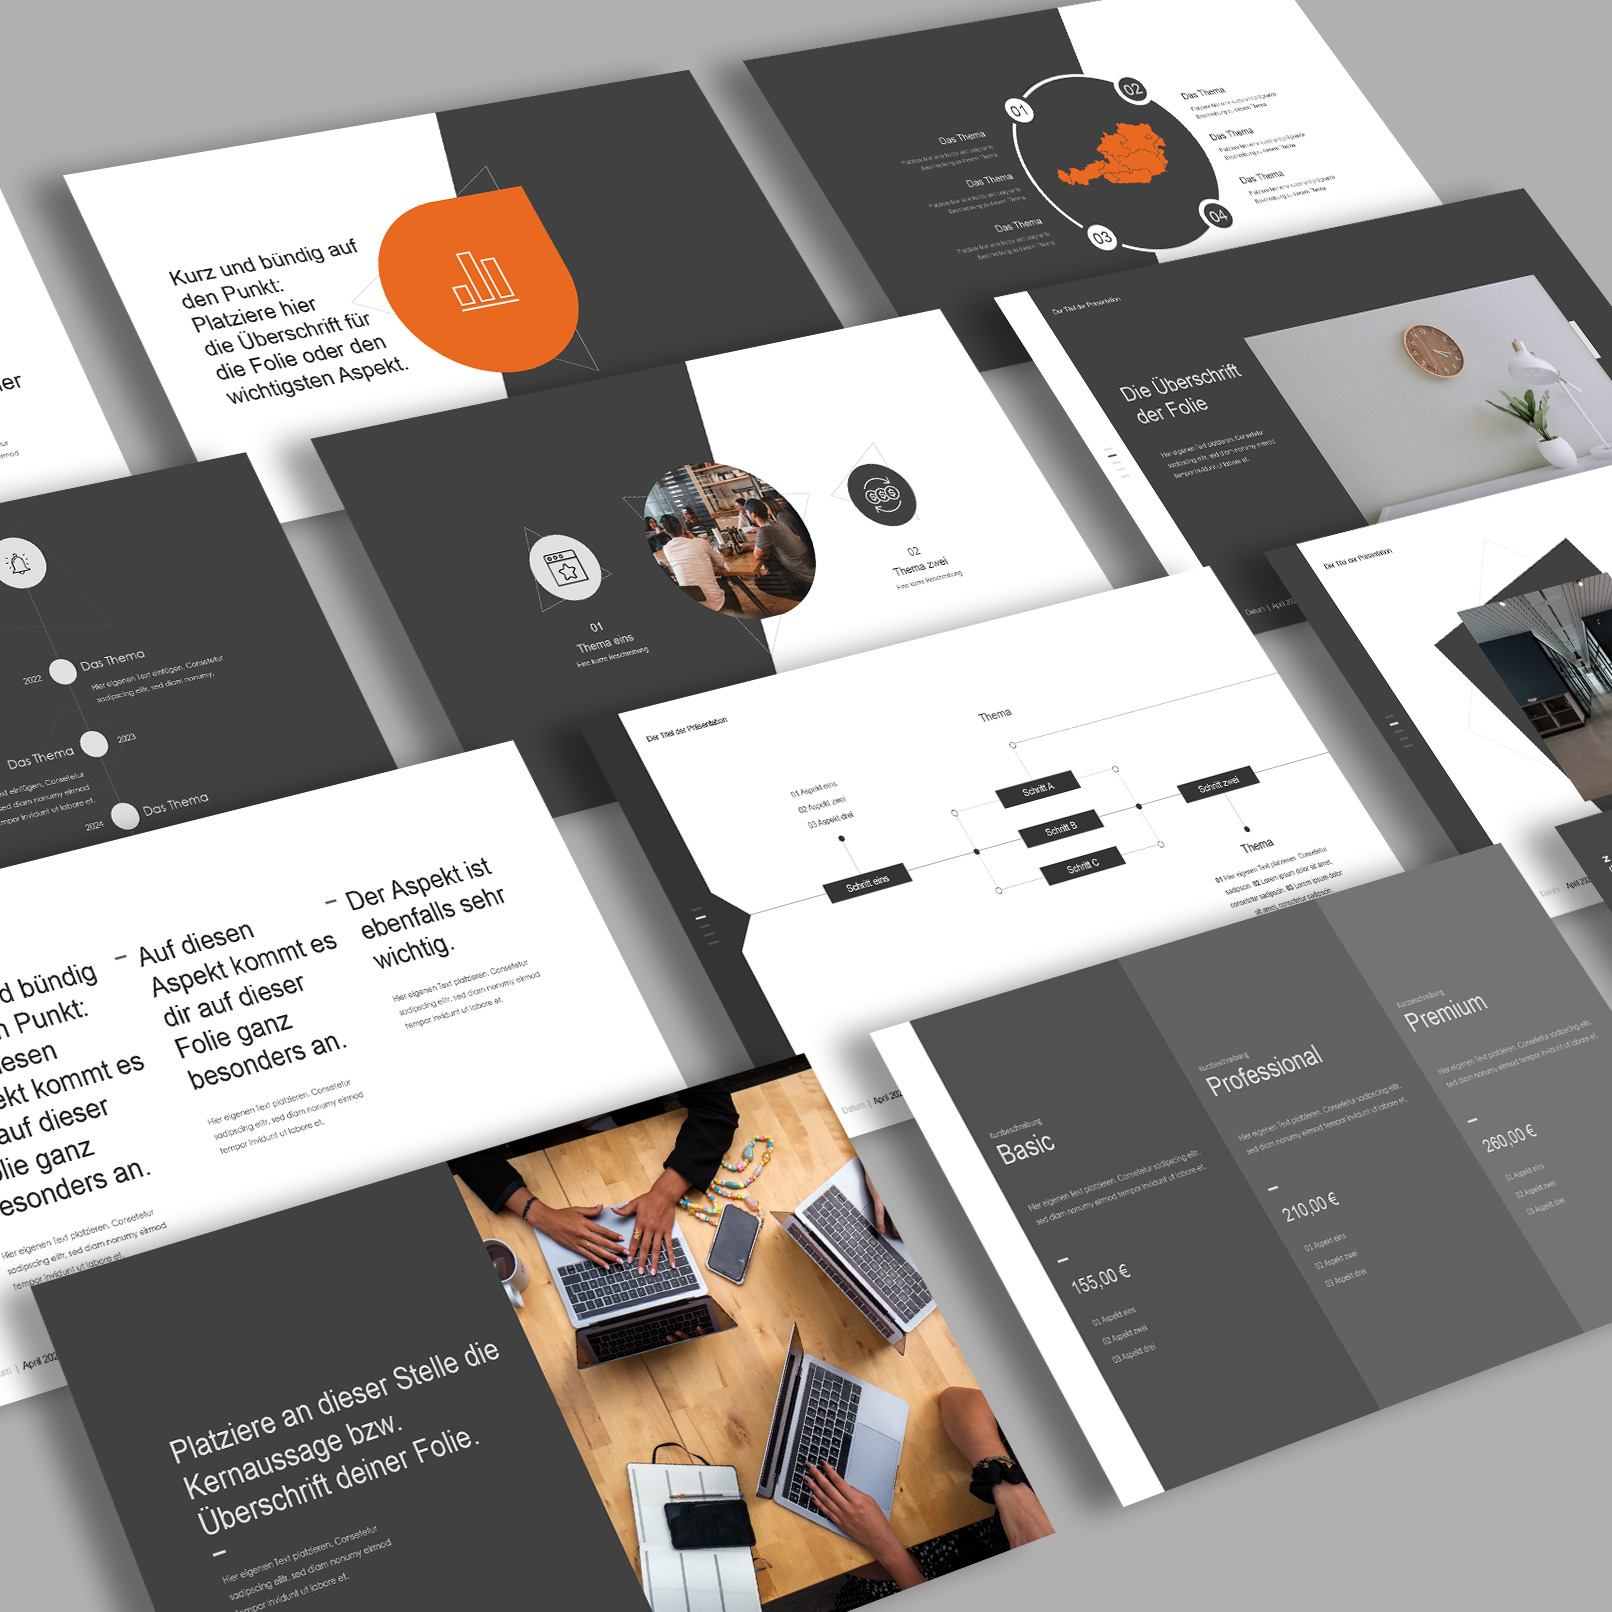 Vorschau auf Folien-Vorlagen im WatchIt-Design für PowerPoint, Google Slides und Keynote